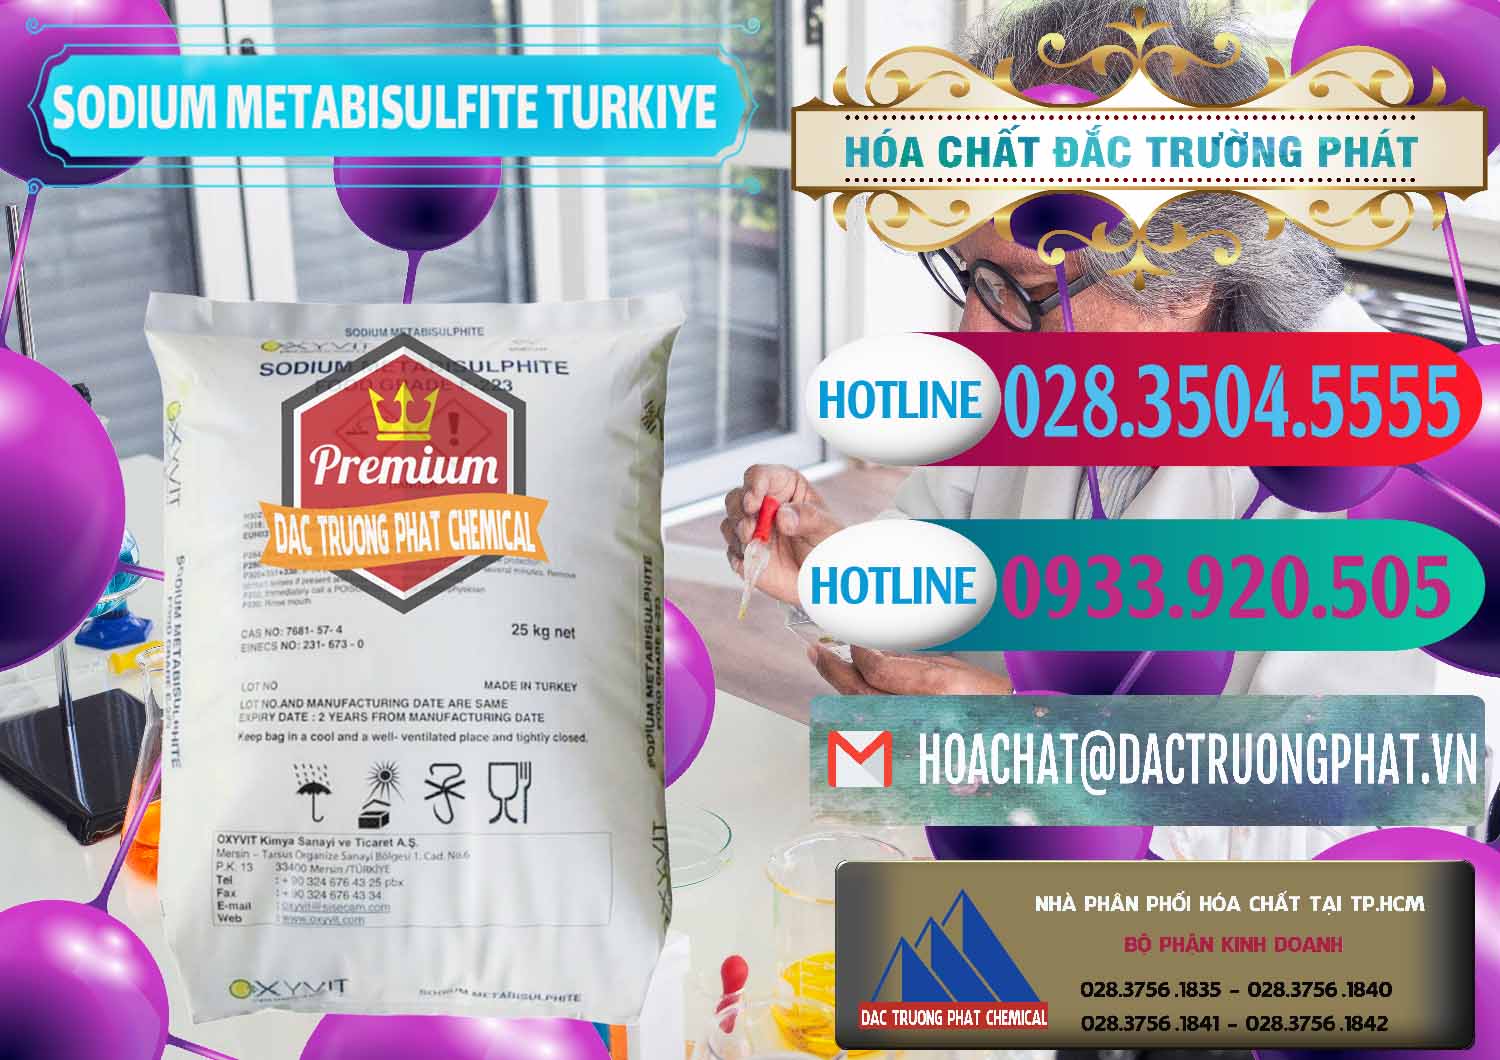 Đơn vị bán và phân phối Sodium Metabisulfite - NA2S2O5 Food Grade E-223 Thổ Nhĩ Kỳ Turkey - 0413 - Phân phối và nhập khẩu hóa chất tại TP.HCM - truongphat.vn